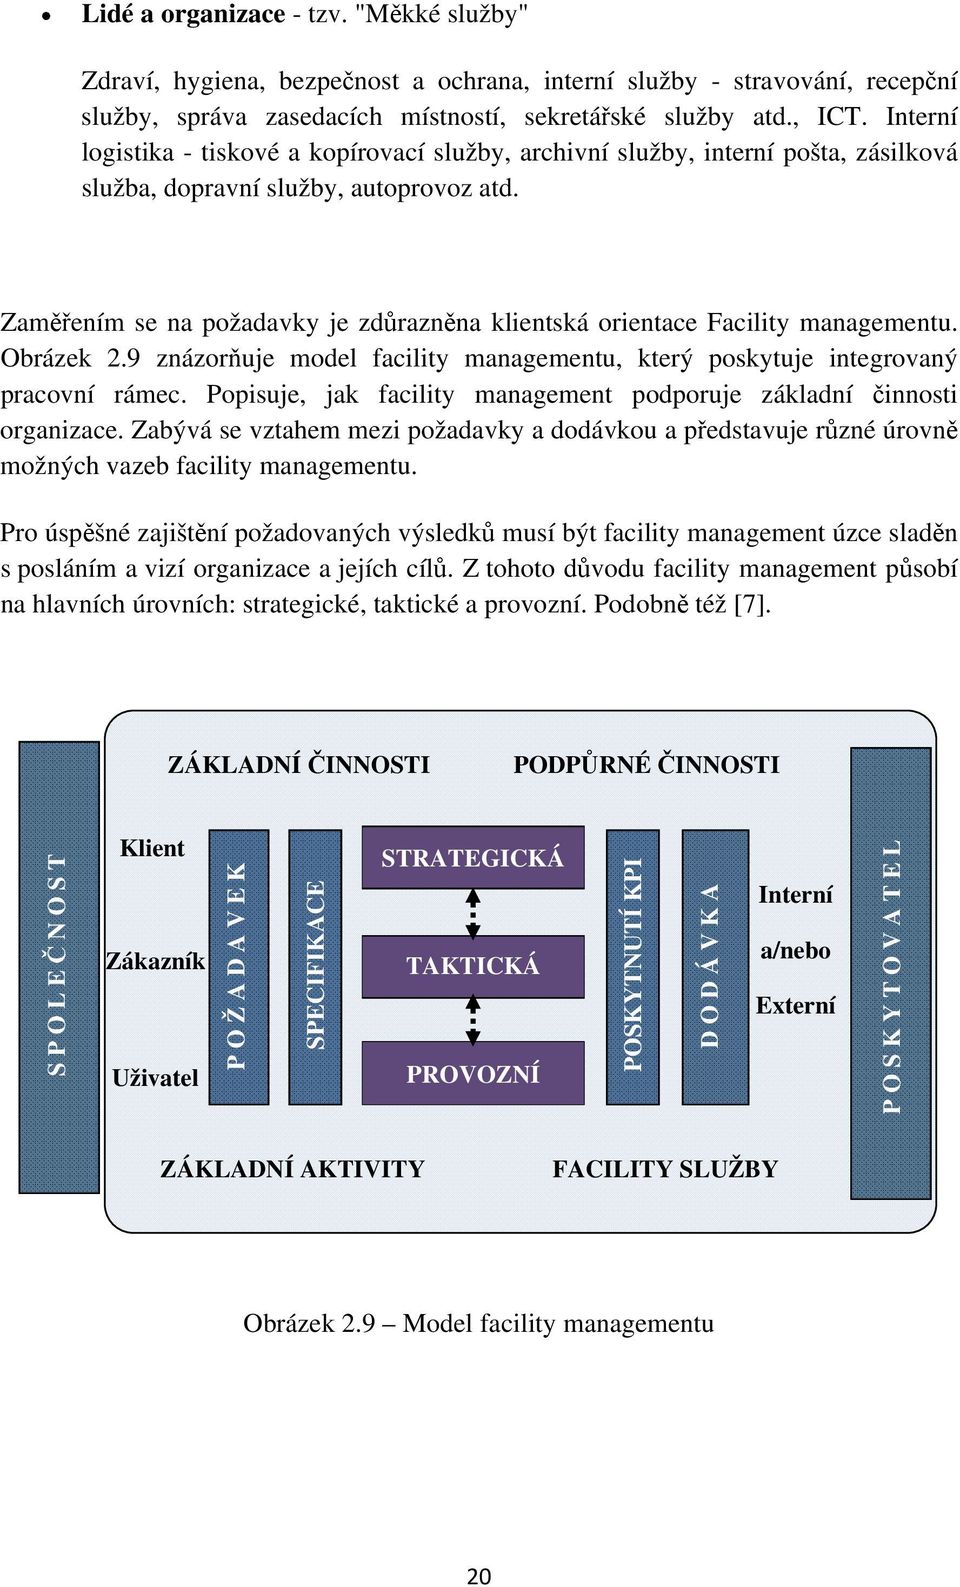 Zamením se na požadavky je zdraznna klientská orientace Facility managementu. Obrázek 2.9 znázoruje model facility managementu, který poskytuje integrovaný pracovní rámec.